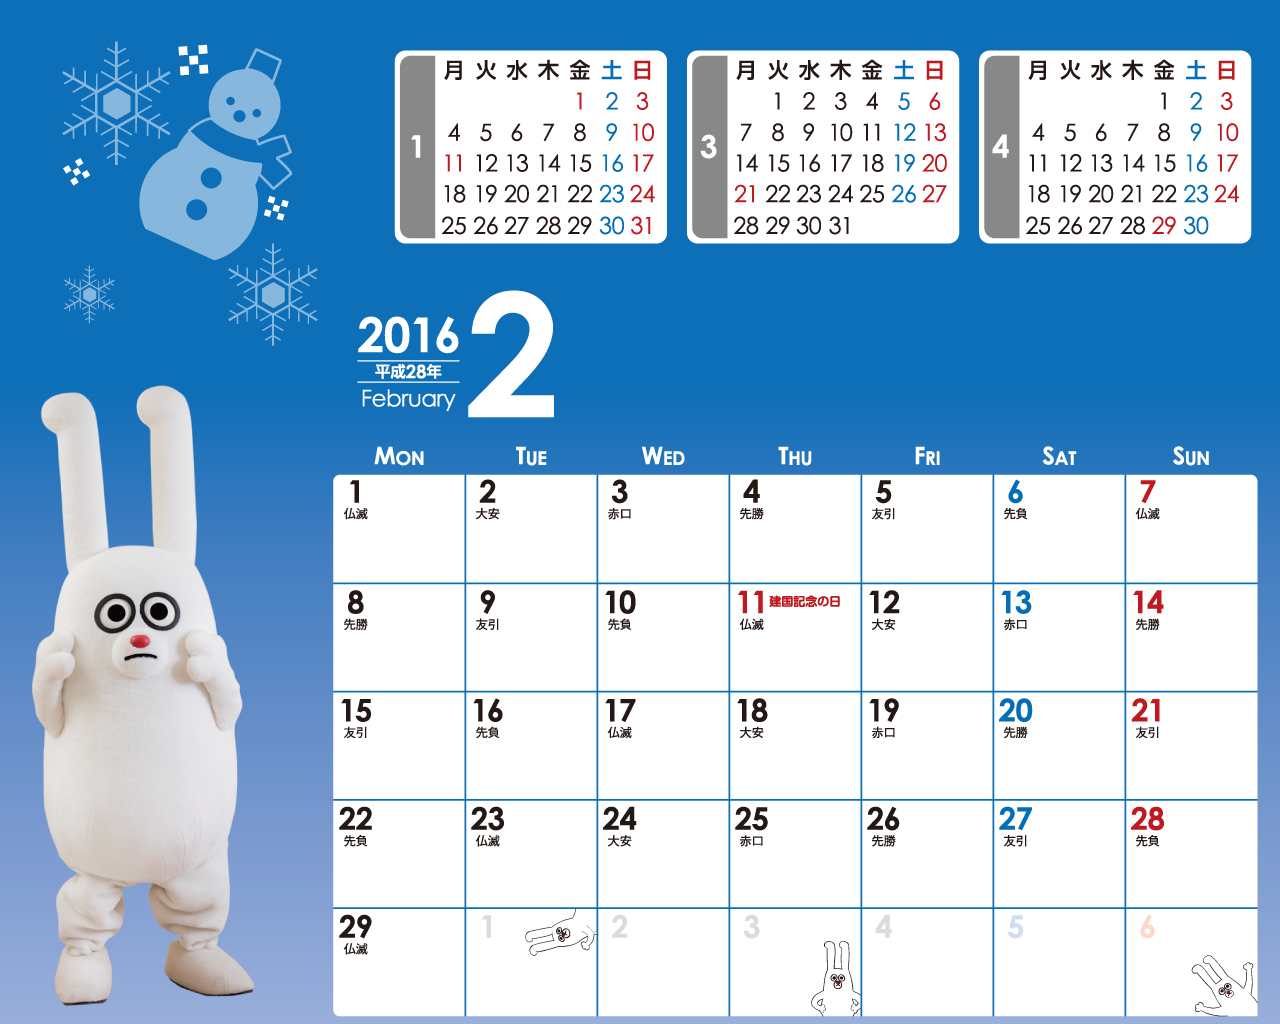 じゅういっちゃんのデジタルカレンダー16年02月 Bs11 イレブン いつでも無料放送